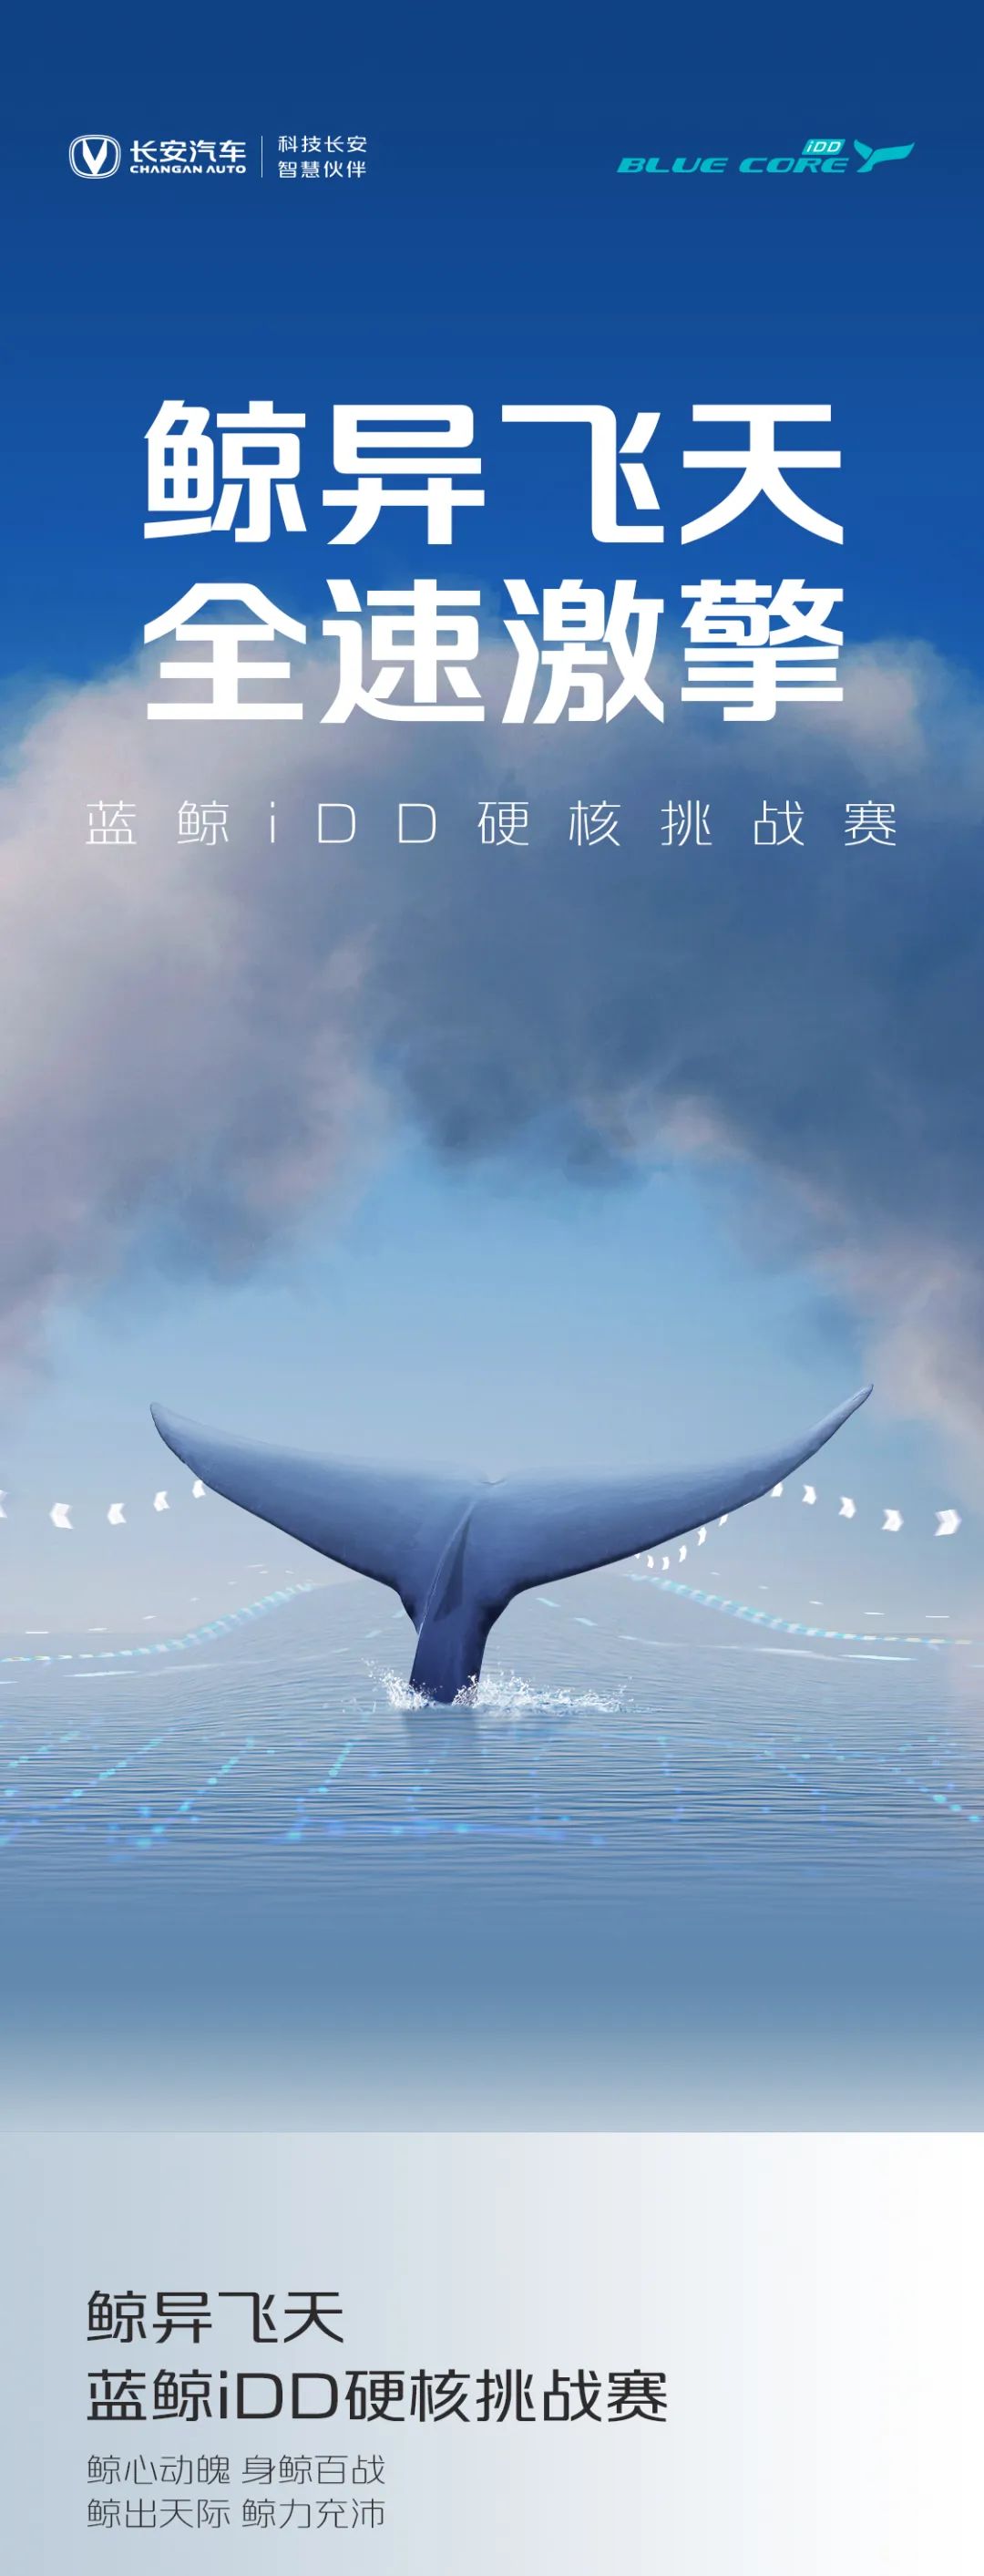 点击查看详细信息<br>标题：蓝鲸iDD硬核挑战赛丨高能无惧挑战 阅读次数：628